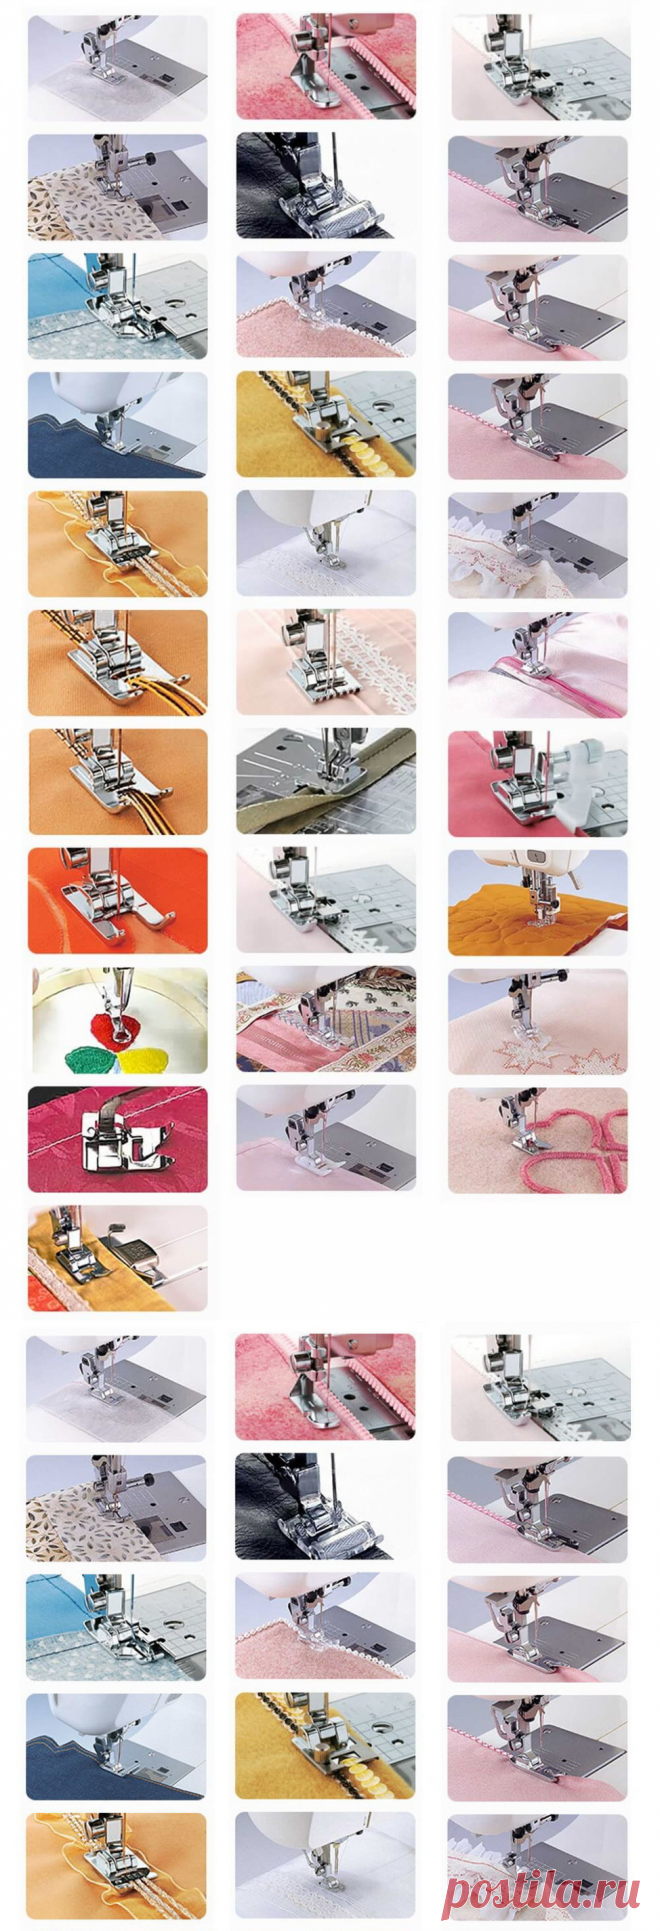 Какие лапки швейной машинки для чего предназначены — Сделай сам, идеи для творчества - DIY Ideas